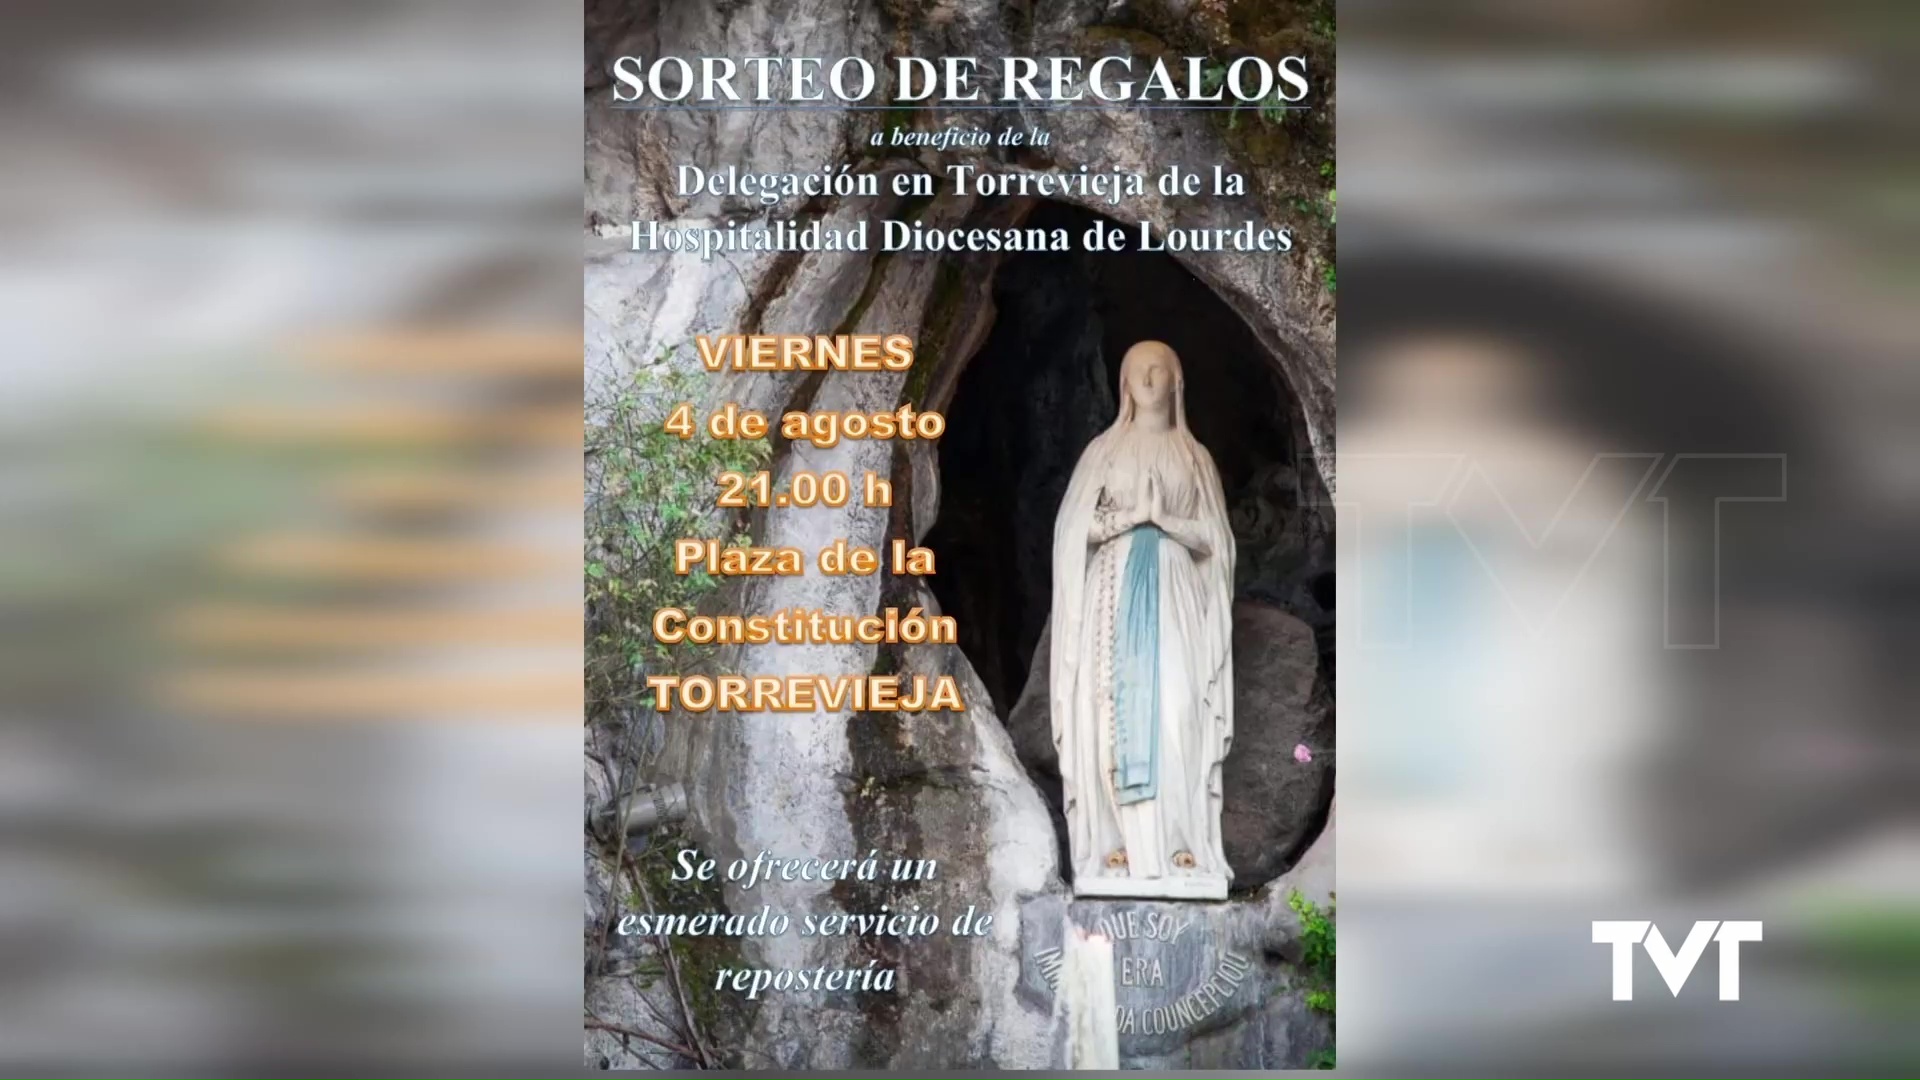 Imagen de Convivencia con repostería a beneficio de la Delegación en Torrevieja de la Hospitalidad de Lourdes